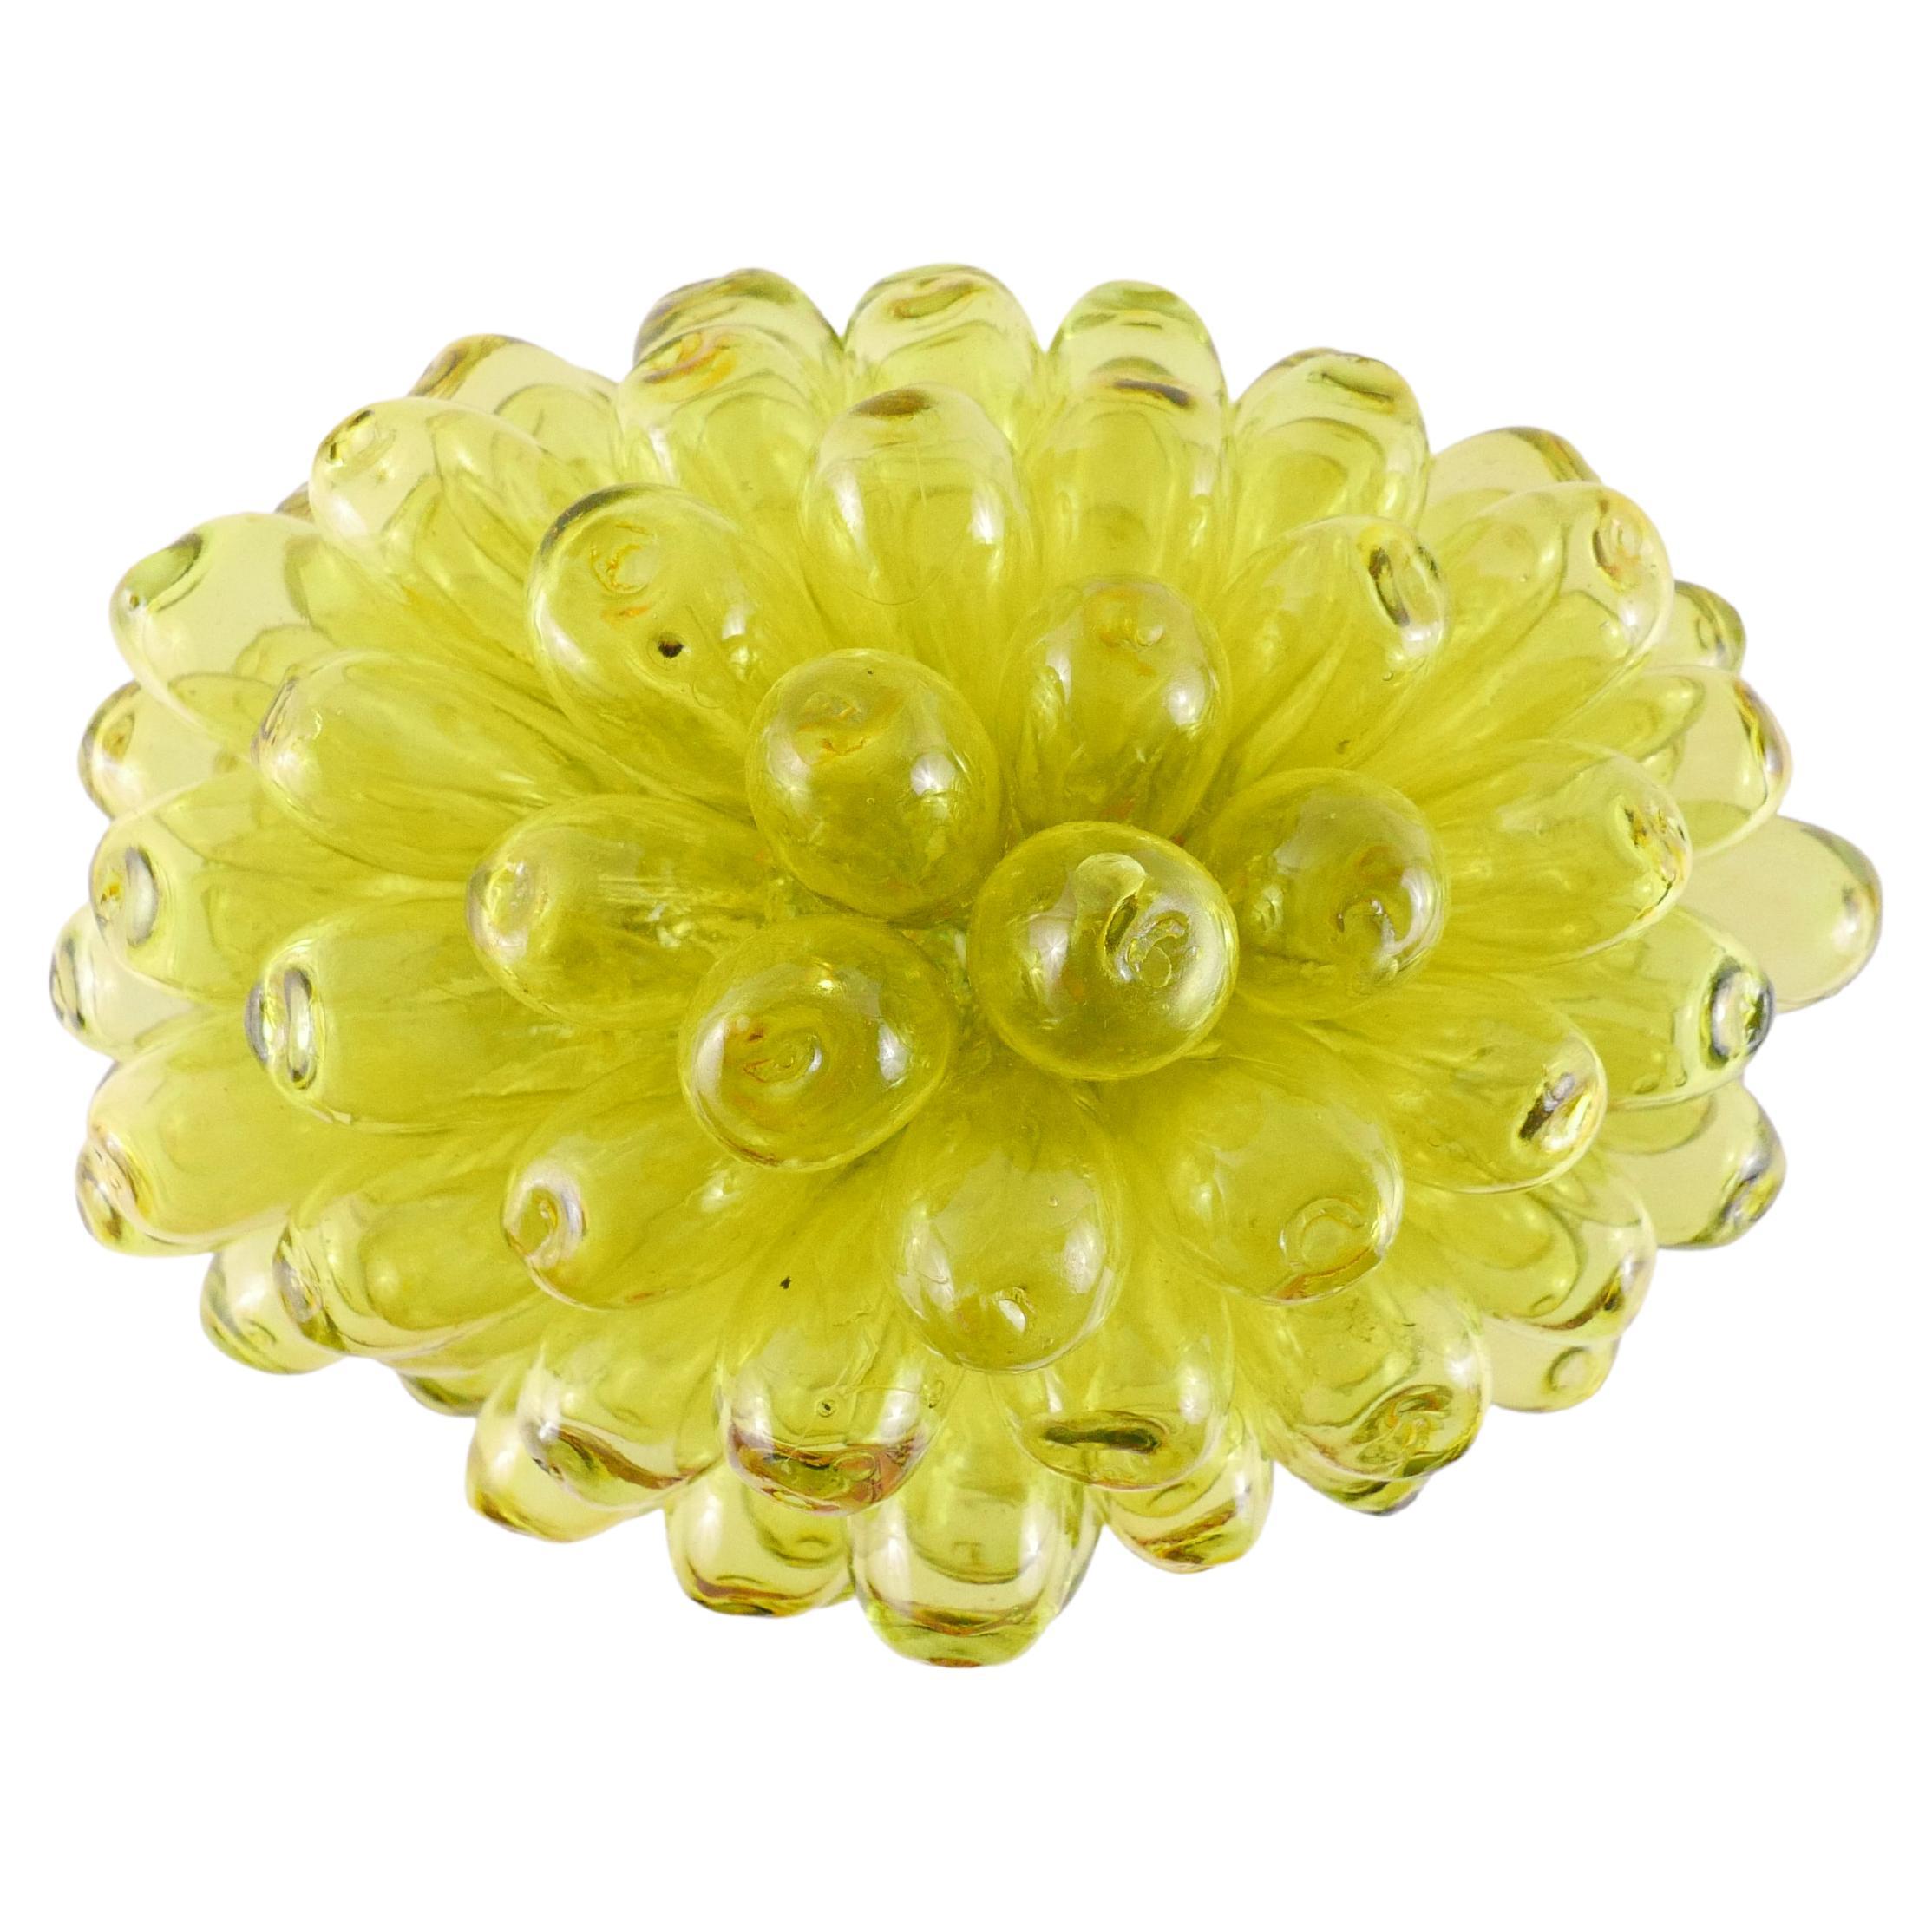 Tischlampe oder Stehlampe aus mundgeblasenem Glas – Zitronen